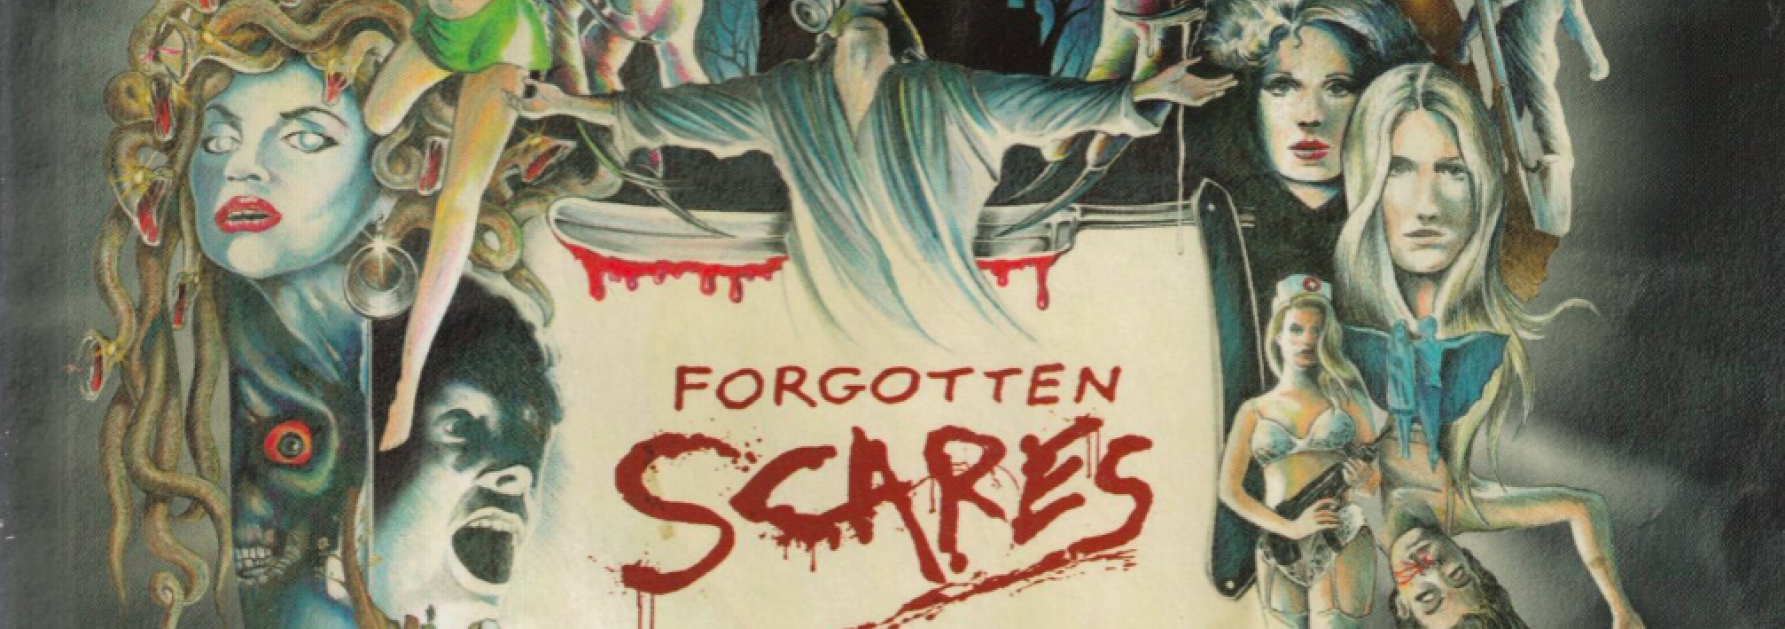 Poster waar opstaat 'Forgotten Scares'